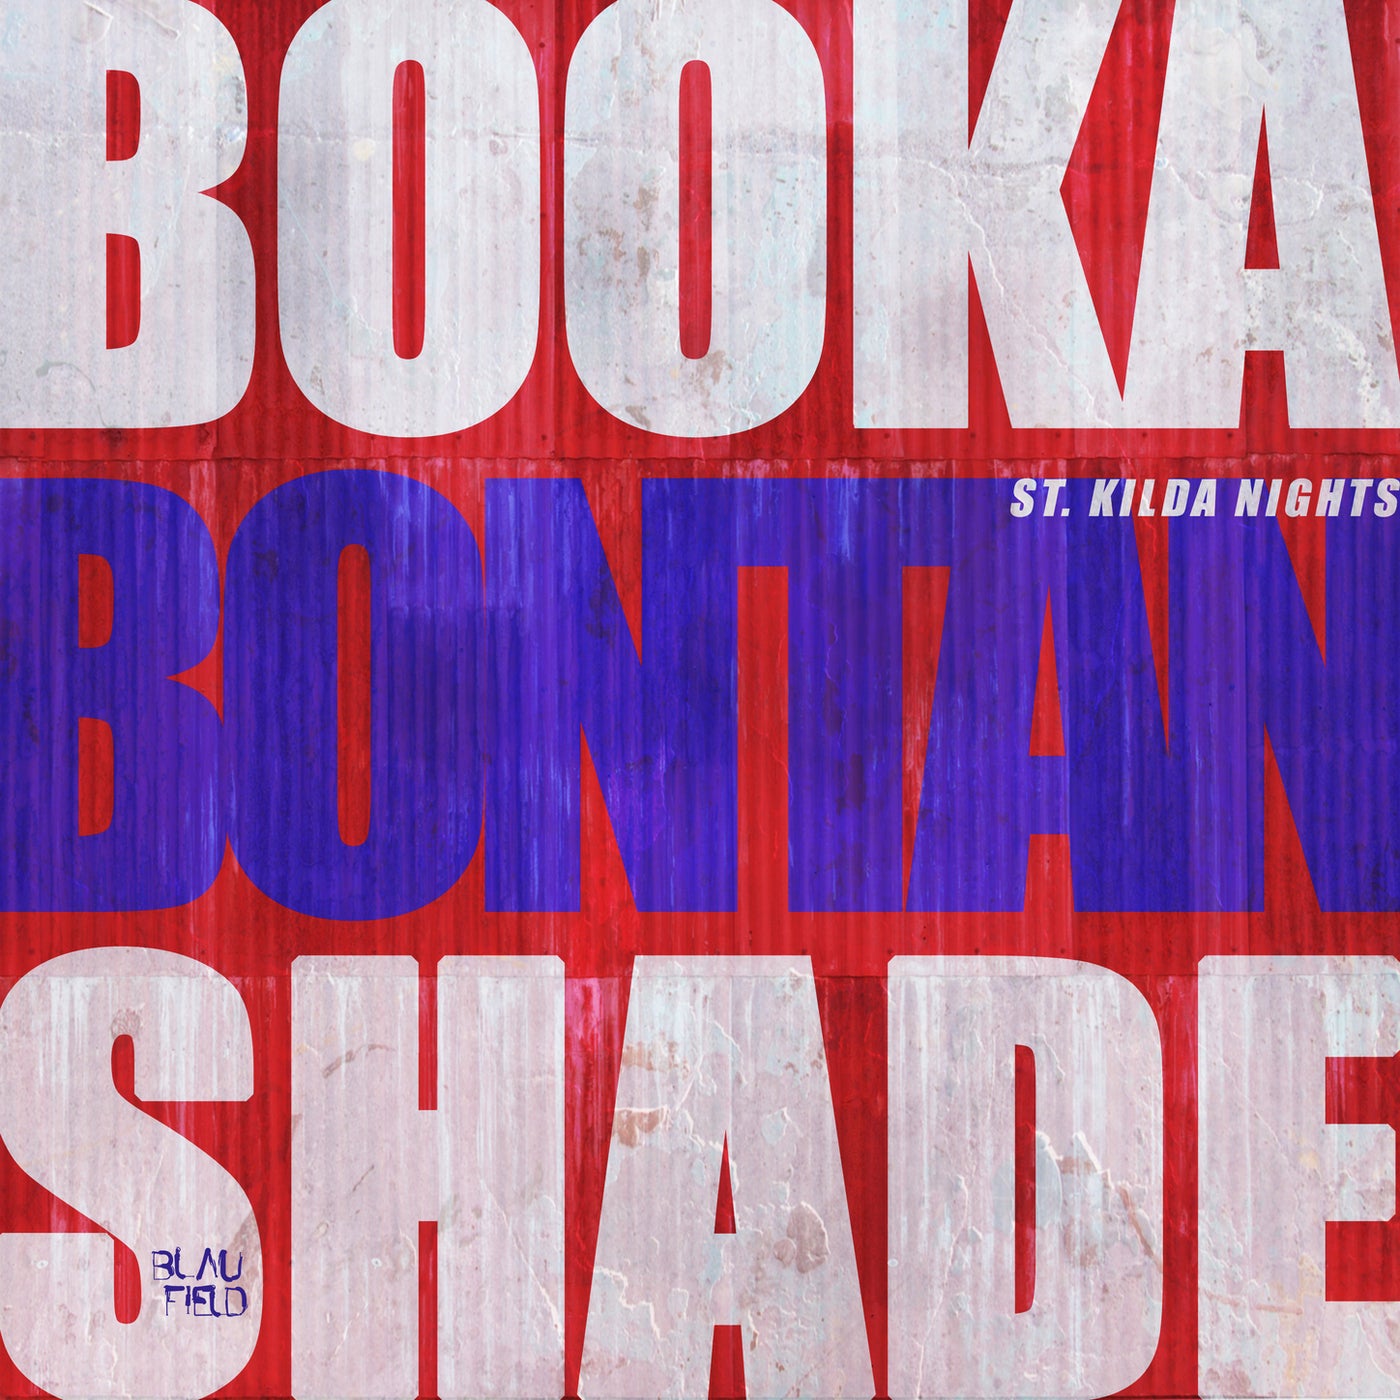 Booka Shade, Bontan - St. Kilda Nights (Club Mix)